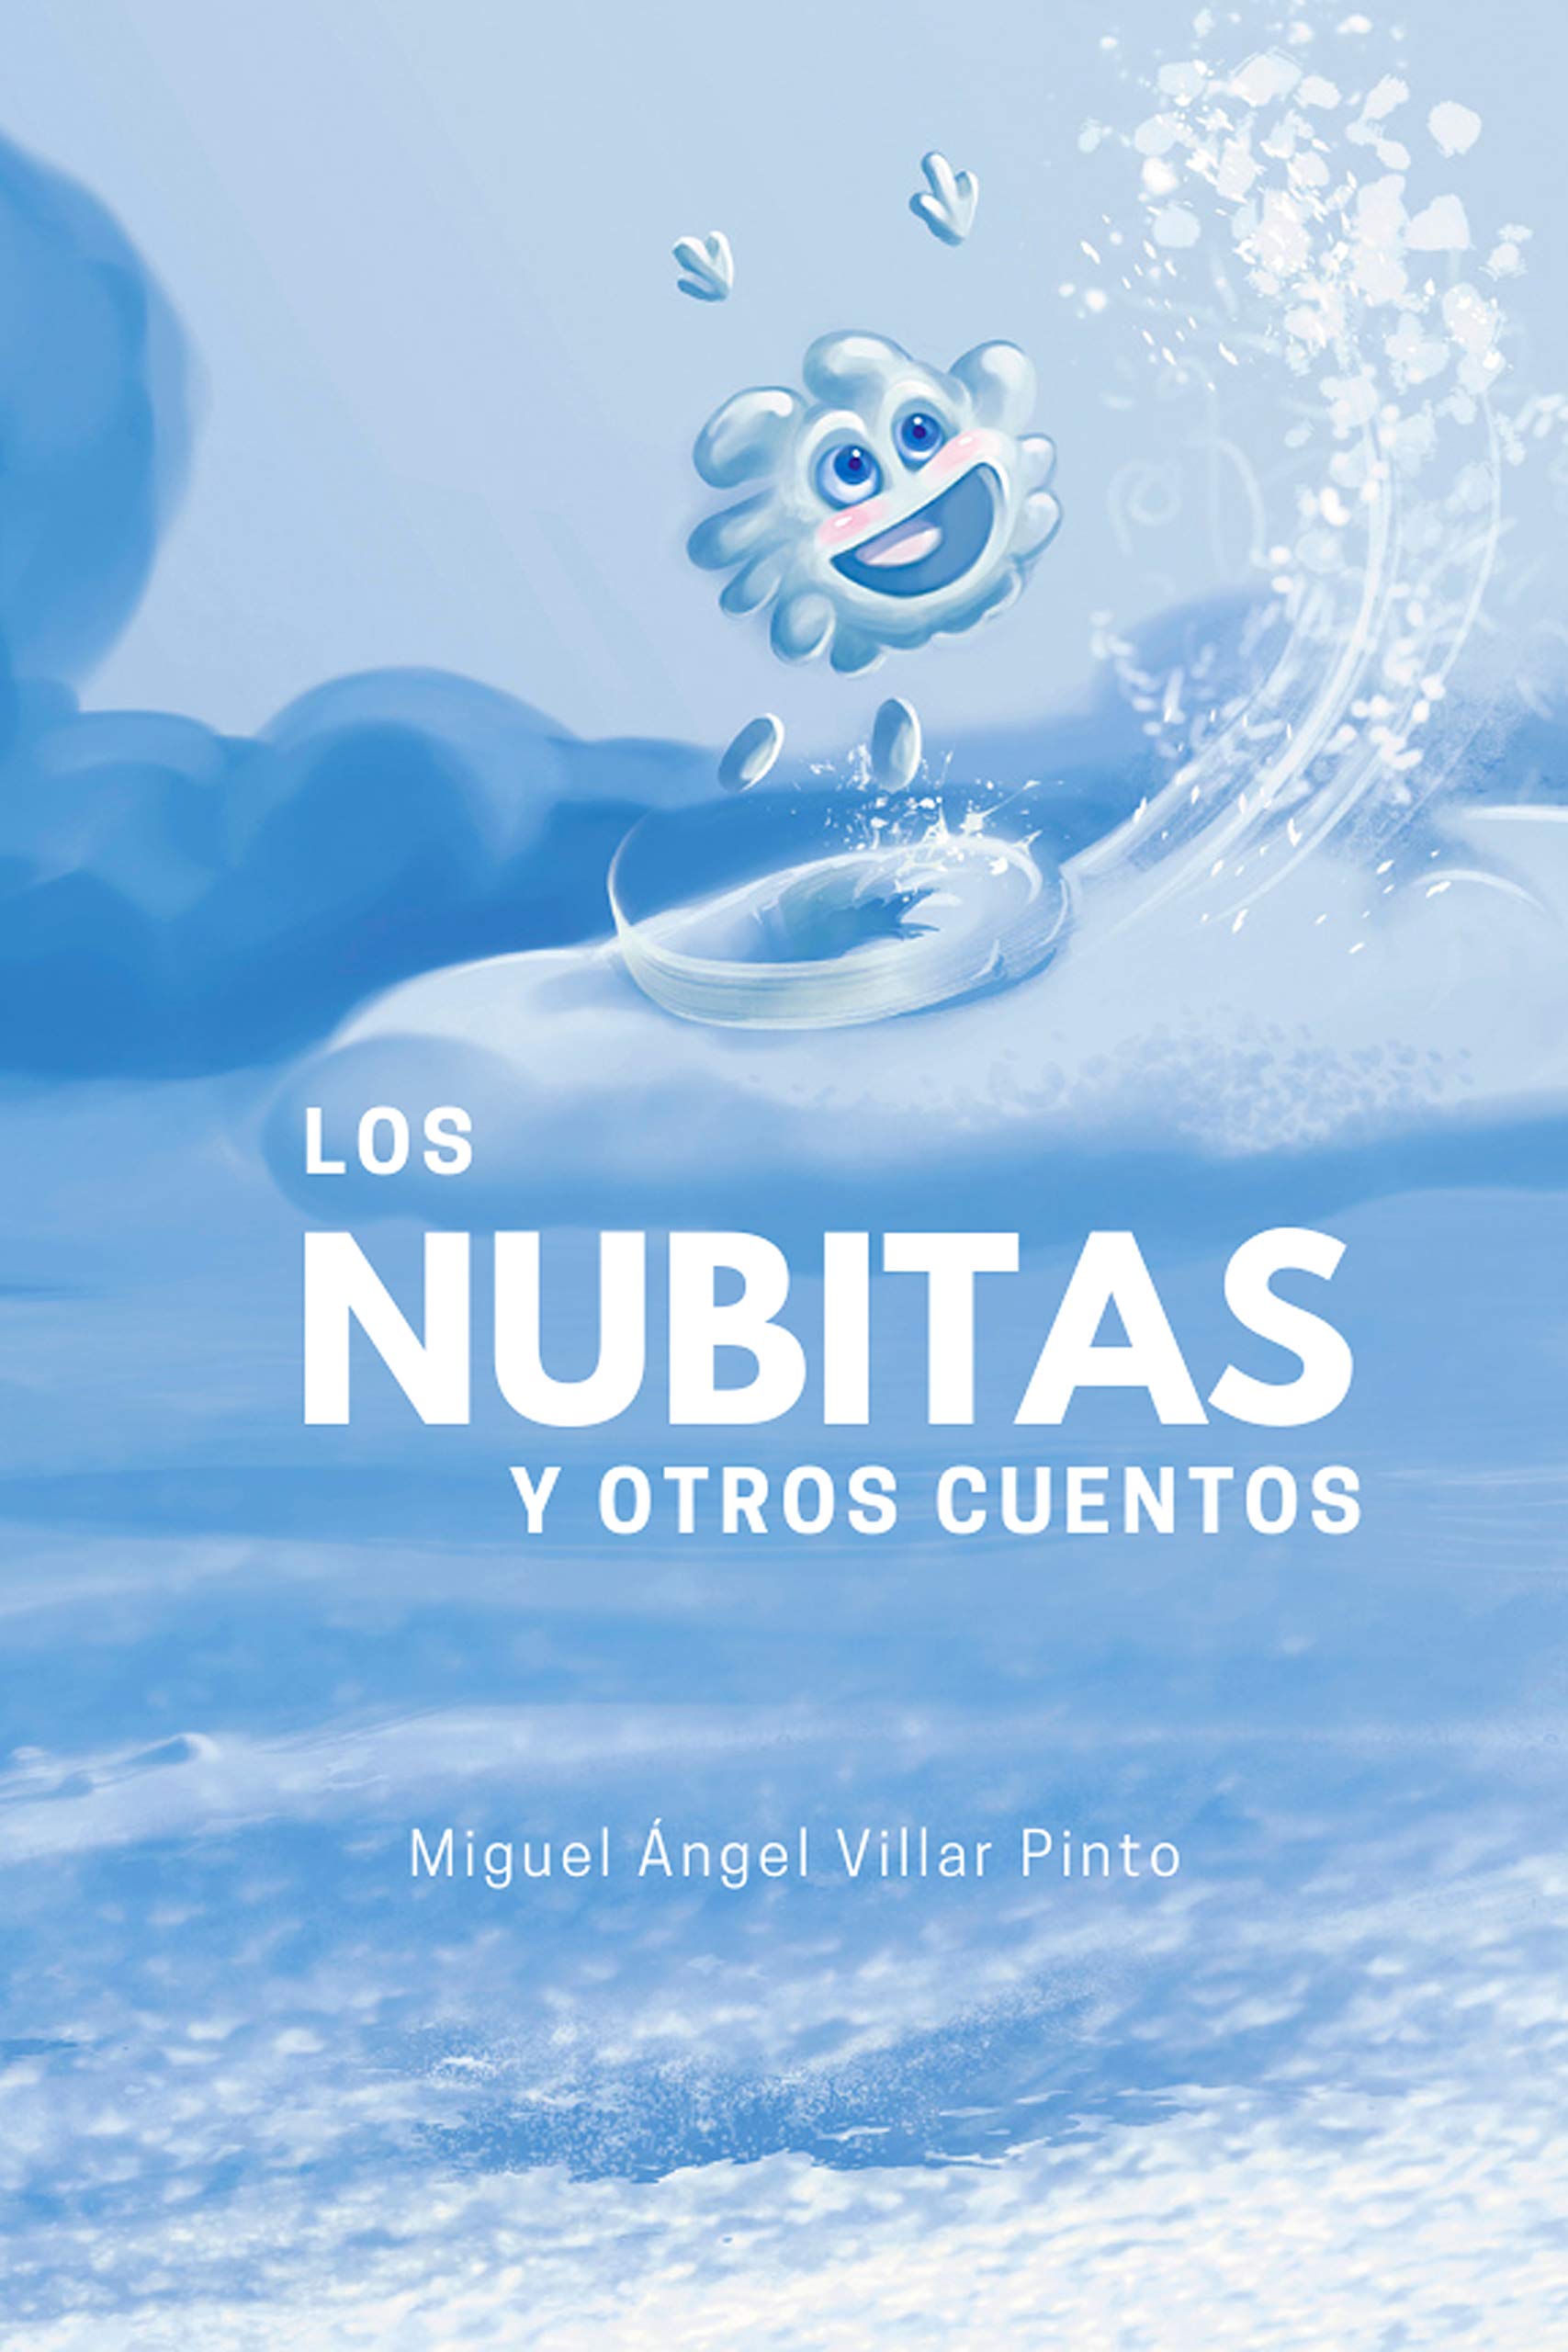 Los nubitas y otros cuentos (Cuentos maravillosos nº 4) (Spanish Edition)